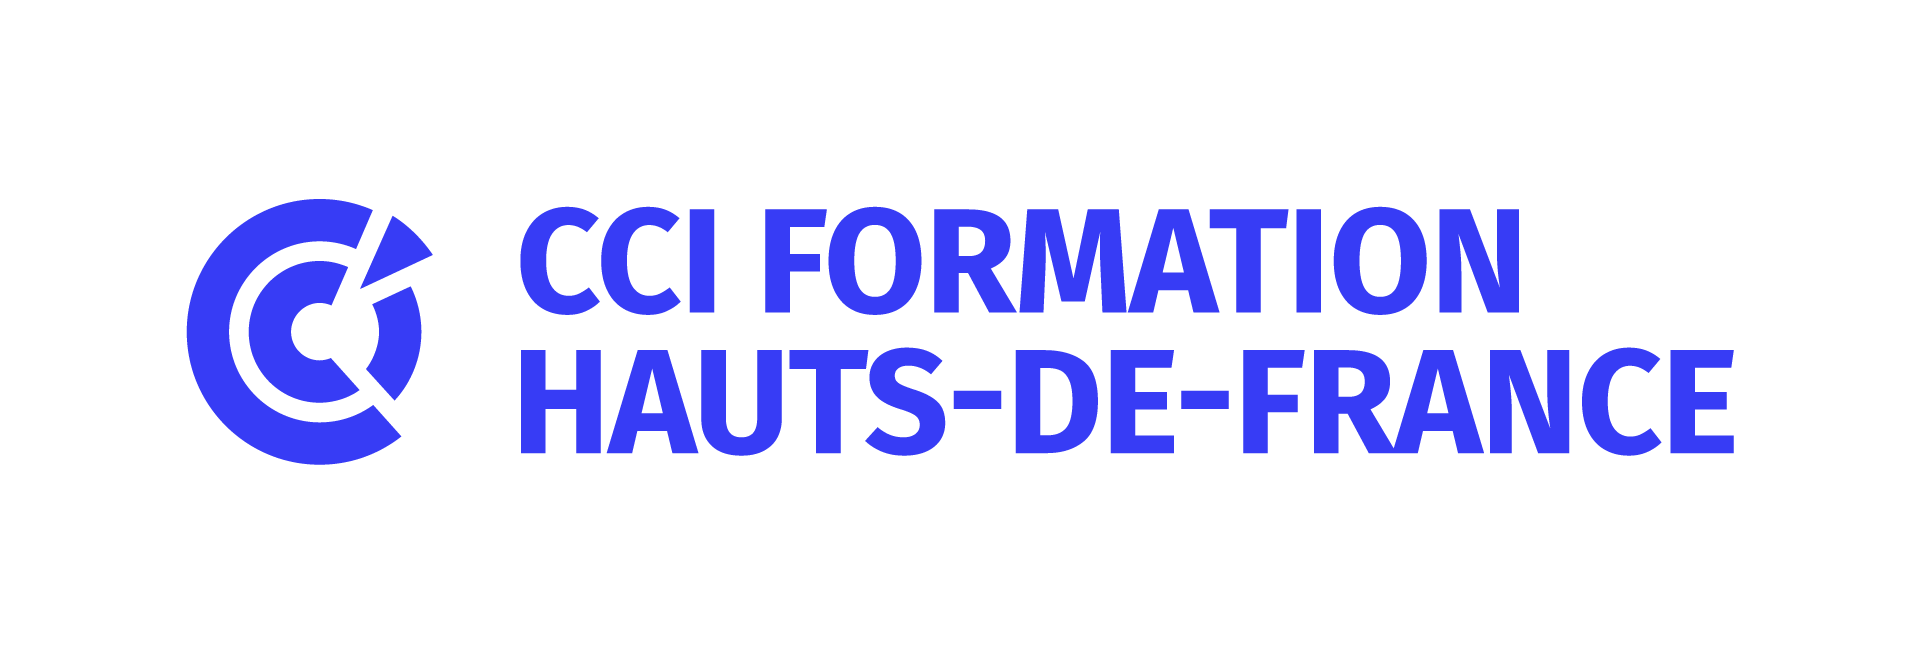 logo CCI Formation